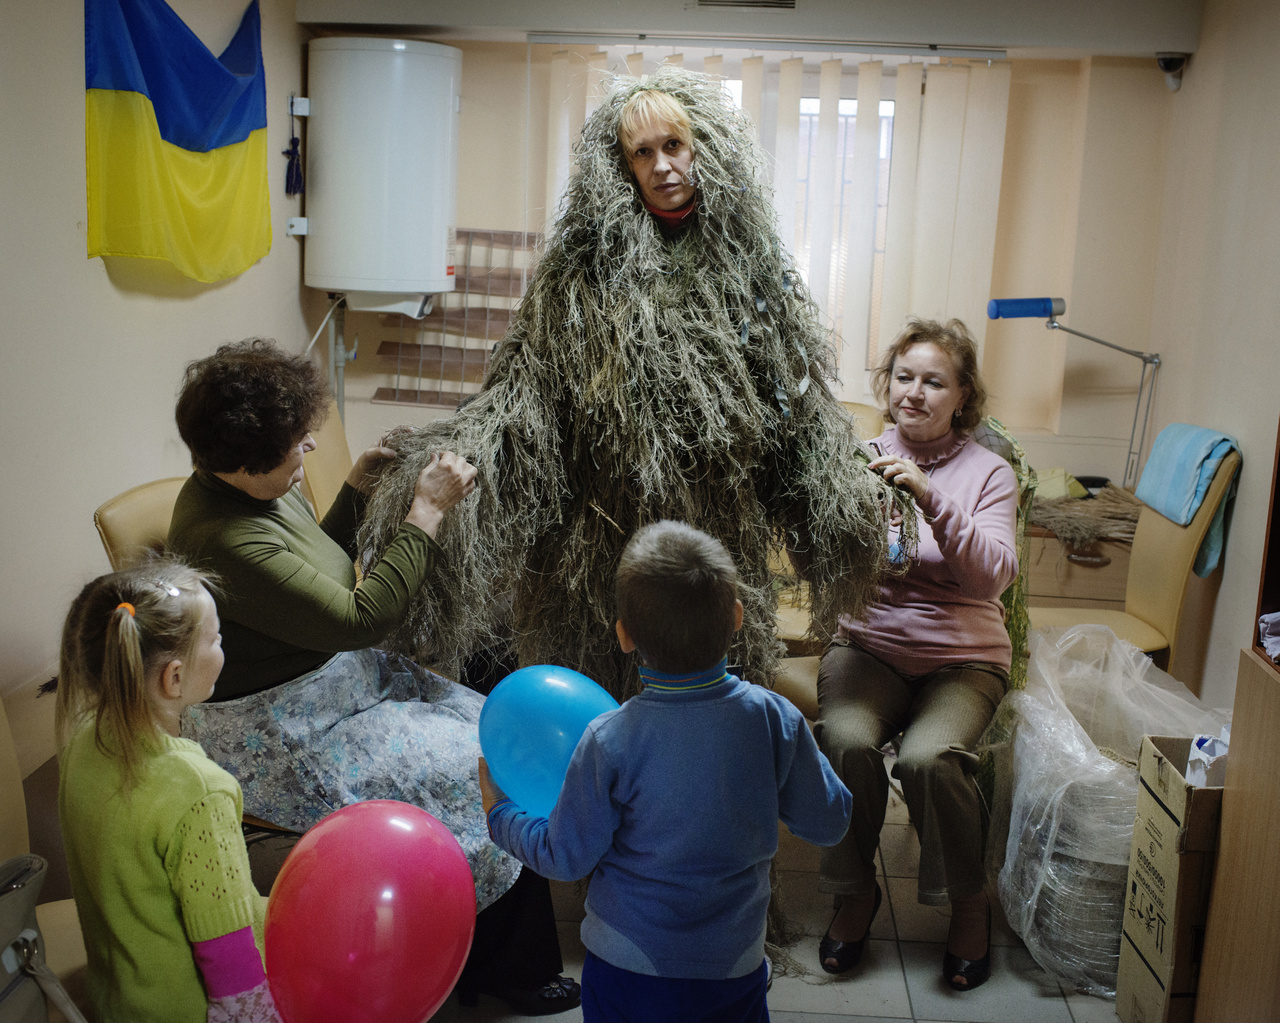 Az ukrán válság (Hosszú távú projekt - Európa): Mariupolban asszonyok készítenek álcaruhát ukrán mesterlövészeknek 2014 szeptemberében. A fotósorozat a 2013 és 2021 közötti időszakot öleli fel. A válság 2014-ben kezdődött, amikor az oroszok annektálták a Krím-félszigetet, majd a kelet-ukrajnai Donyeck és Luhanszk régióban élő orosz ajkúak egyre hangosabban követelték az elszakadást Ukrajnától. A konfliktust nem sikerült rendezni, a két szakadár területen népköztársaságot kiáltottak ki, amelyet Vlagyimir Putyin végül 2022 februárjában elismert, majd megindította a háborút Ukrajna ellen.